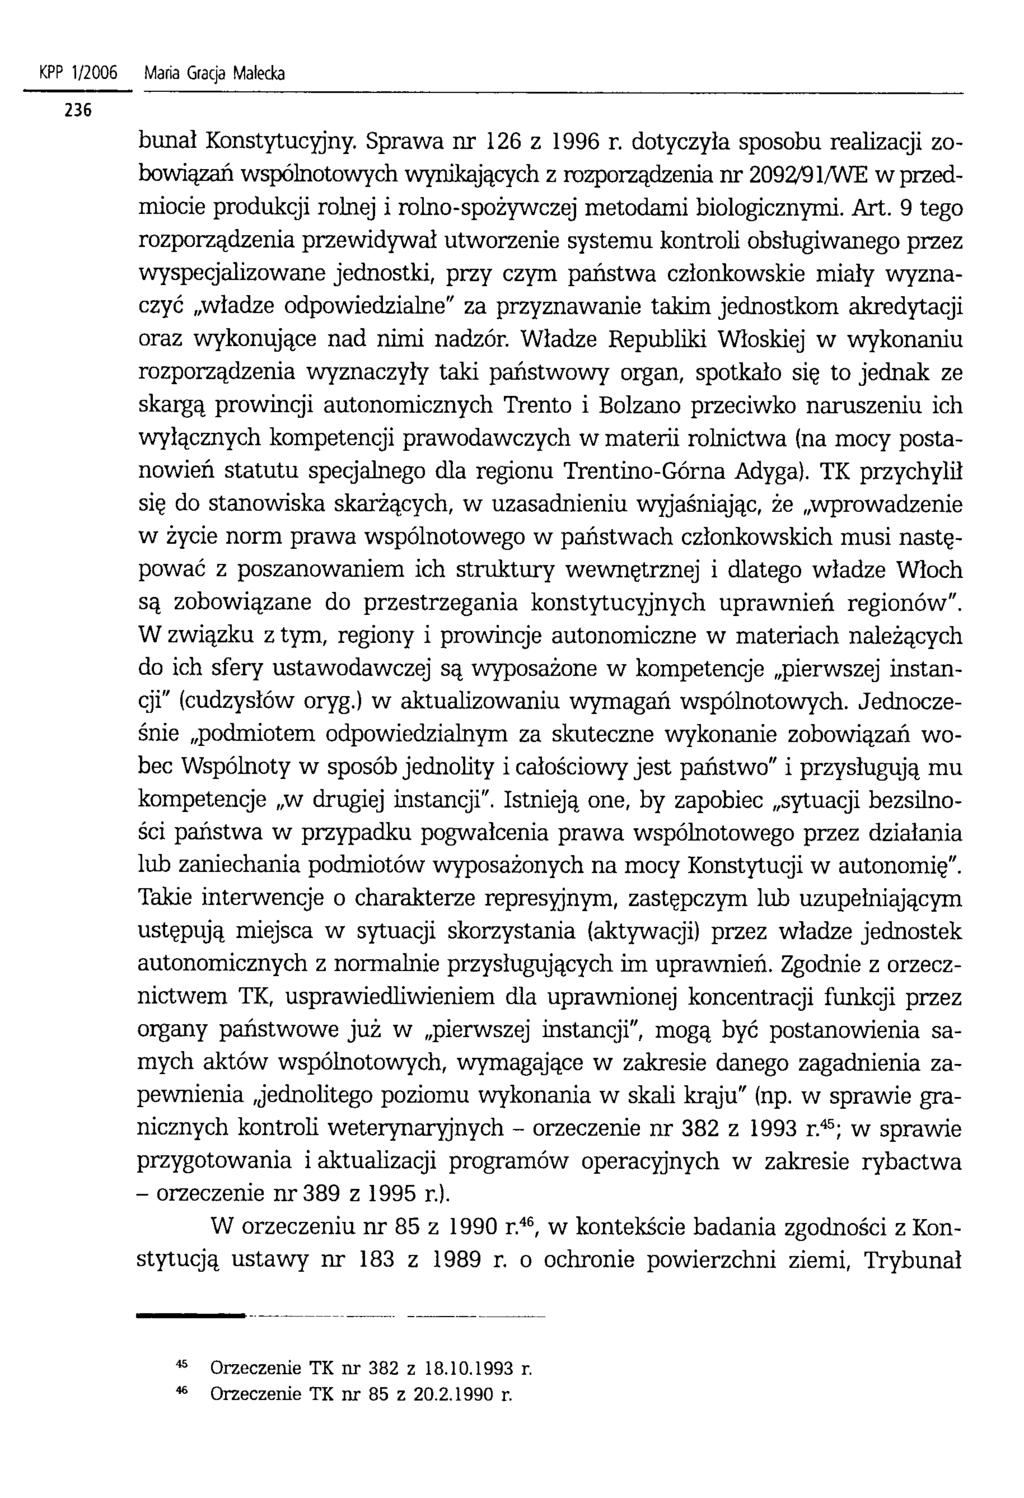 KPP 1/2006 Maria Gracja Małecka bunał Konstytucyjny. Sprawa nr 126 z 1996 r.